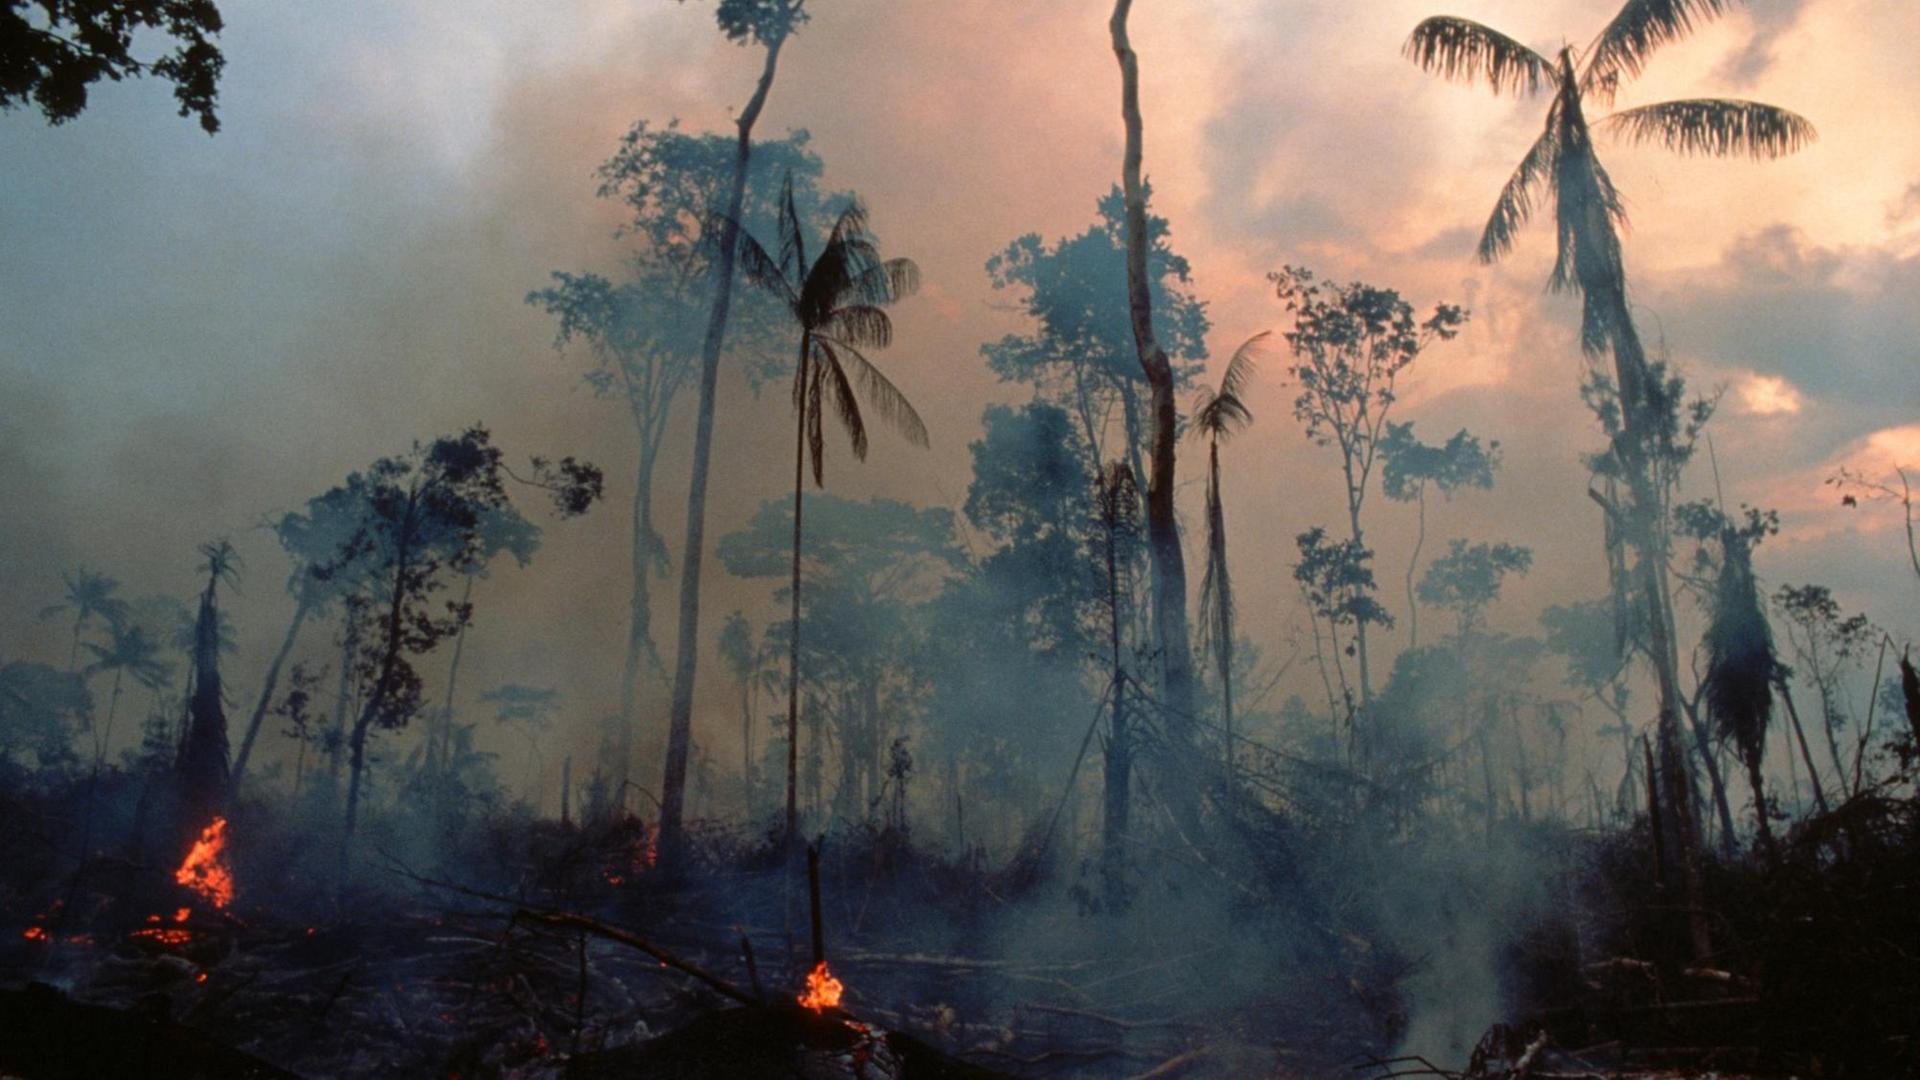 Verkohlte Bäume und Rauch aufgrund Brandrodung im tropischen Regenwald in Brasilien.